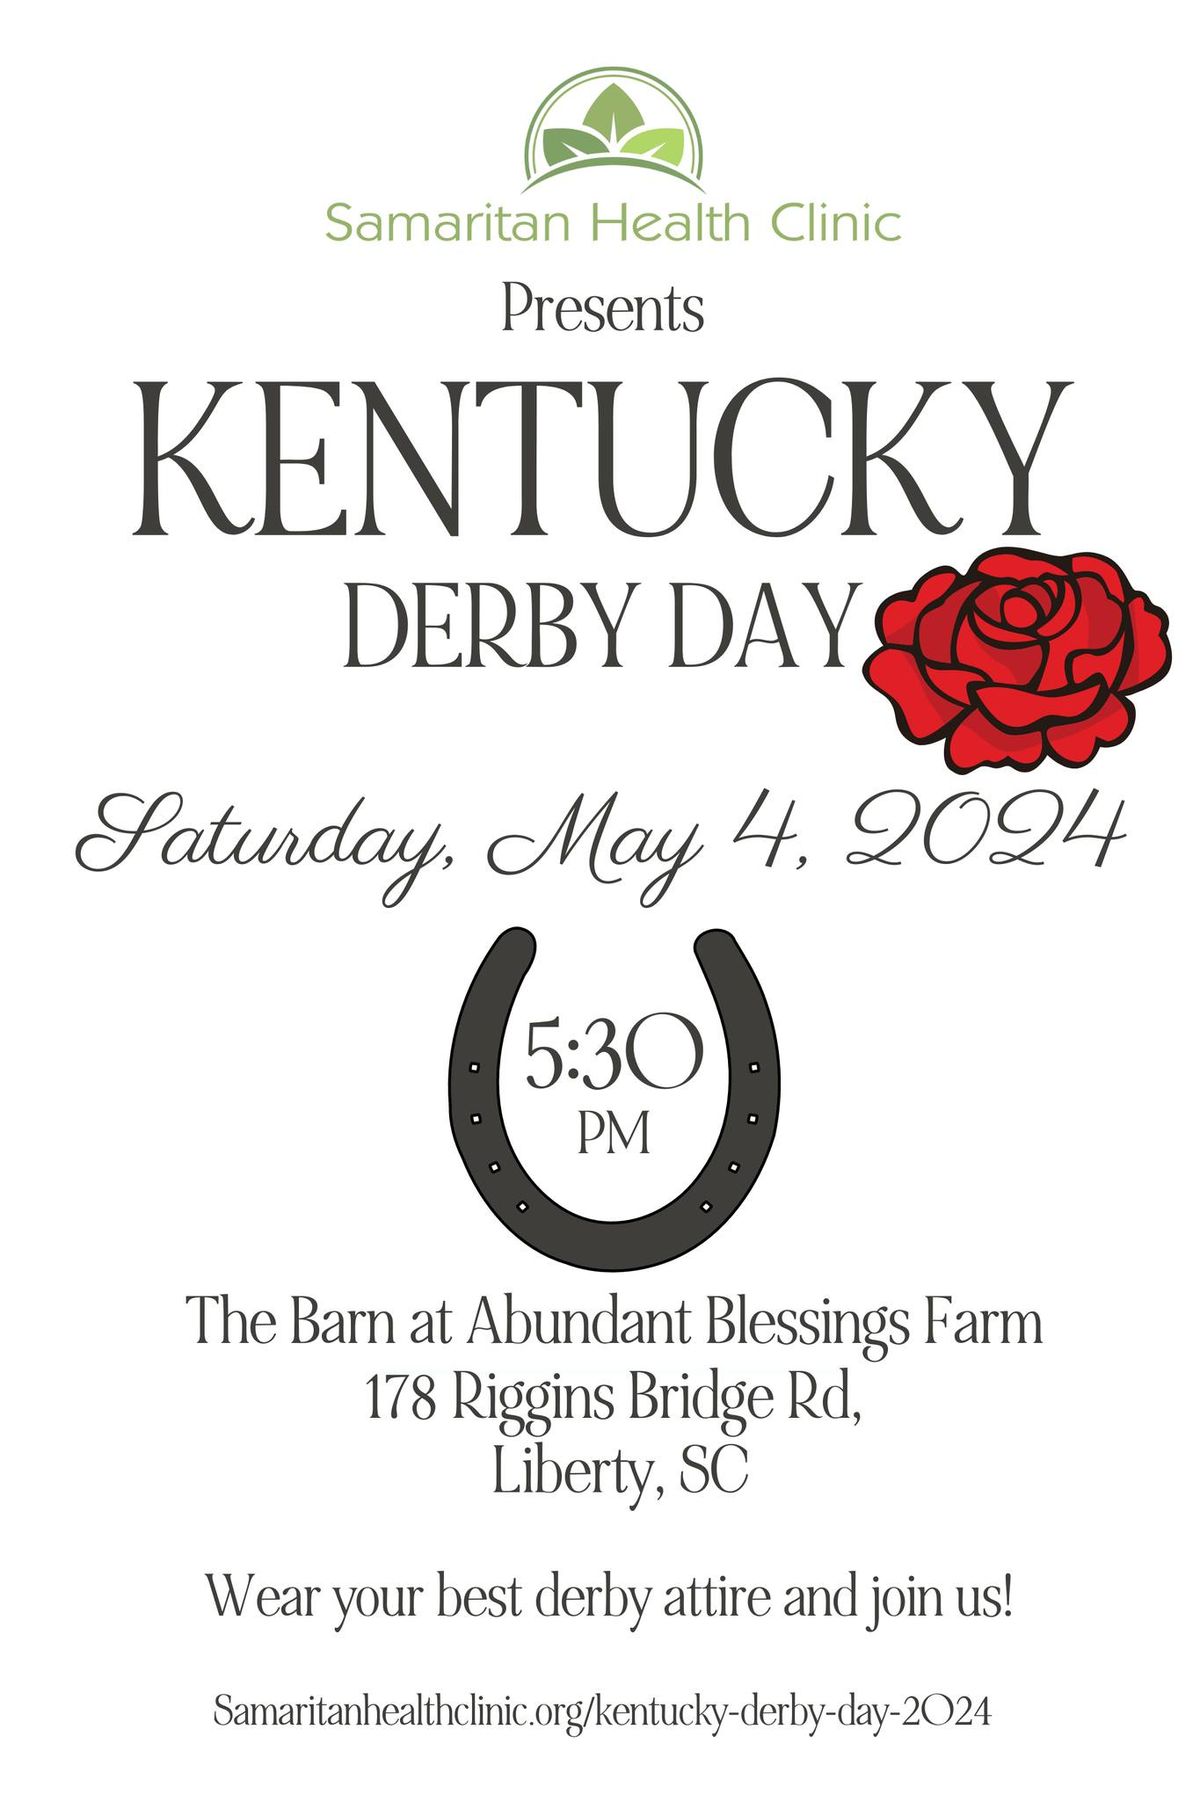 Kentucky Derby Day Samaritan Health Clinic 2024 The Barn at